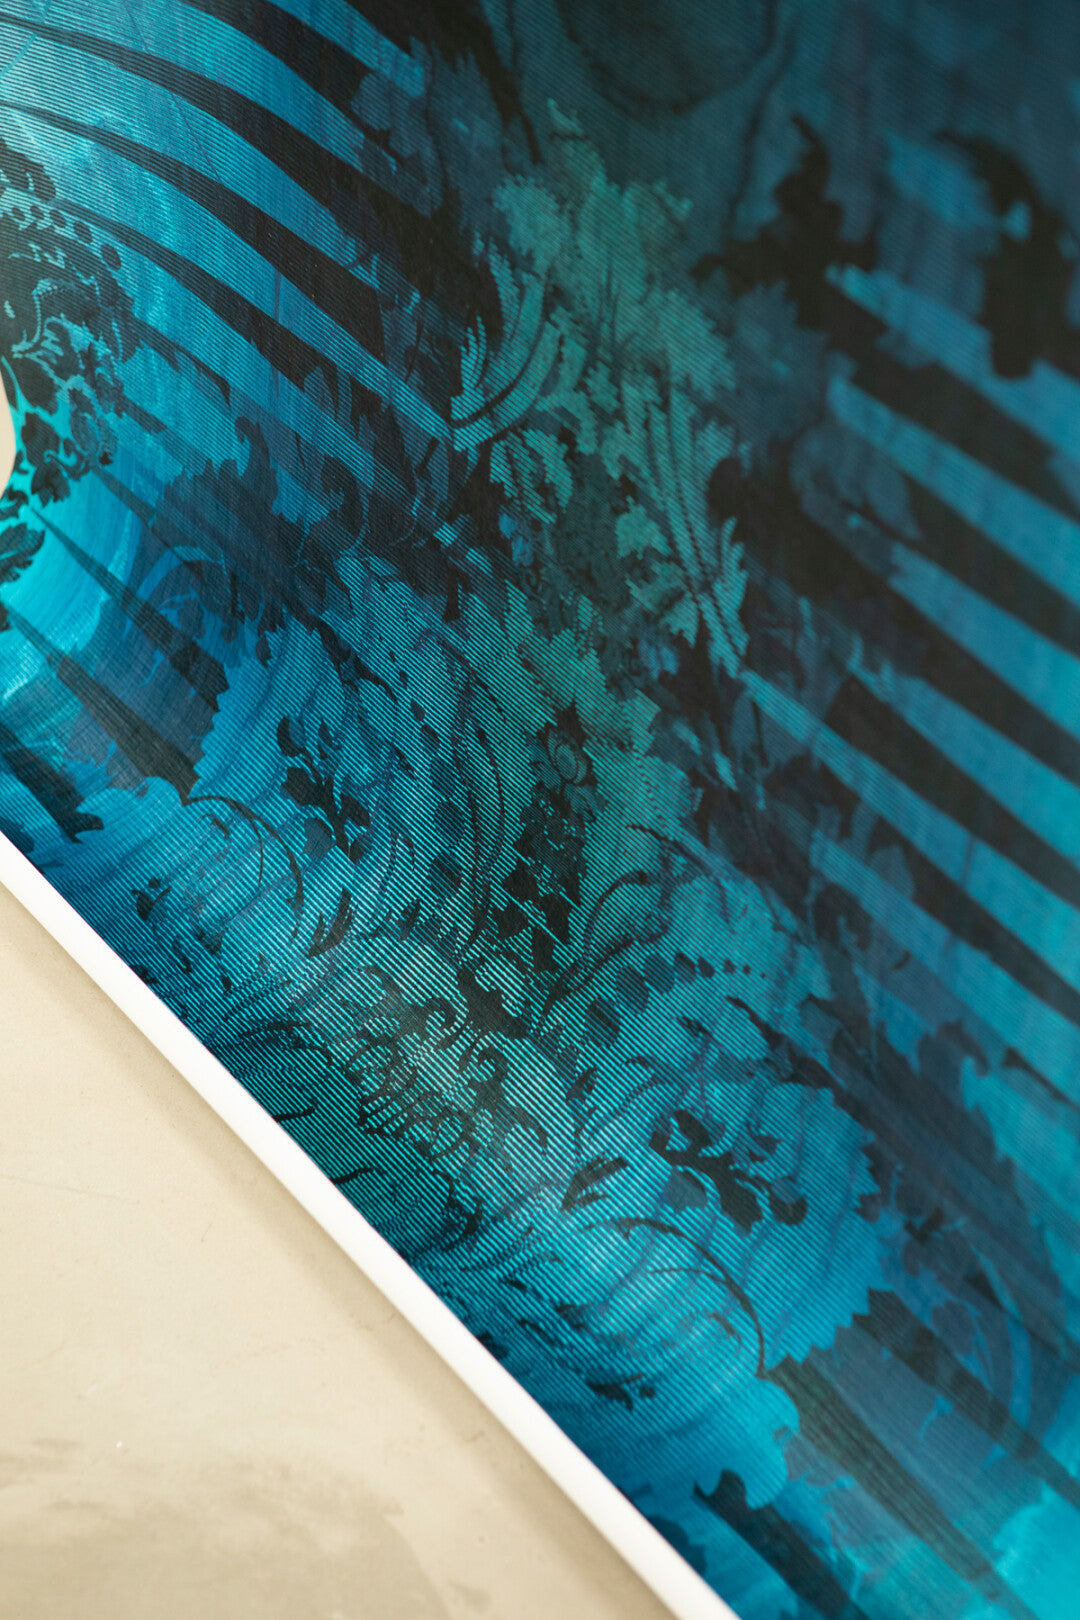 Moire Damask Foil Room Wallpaper - Blue